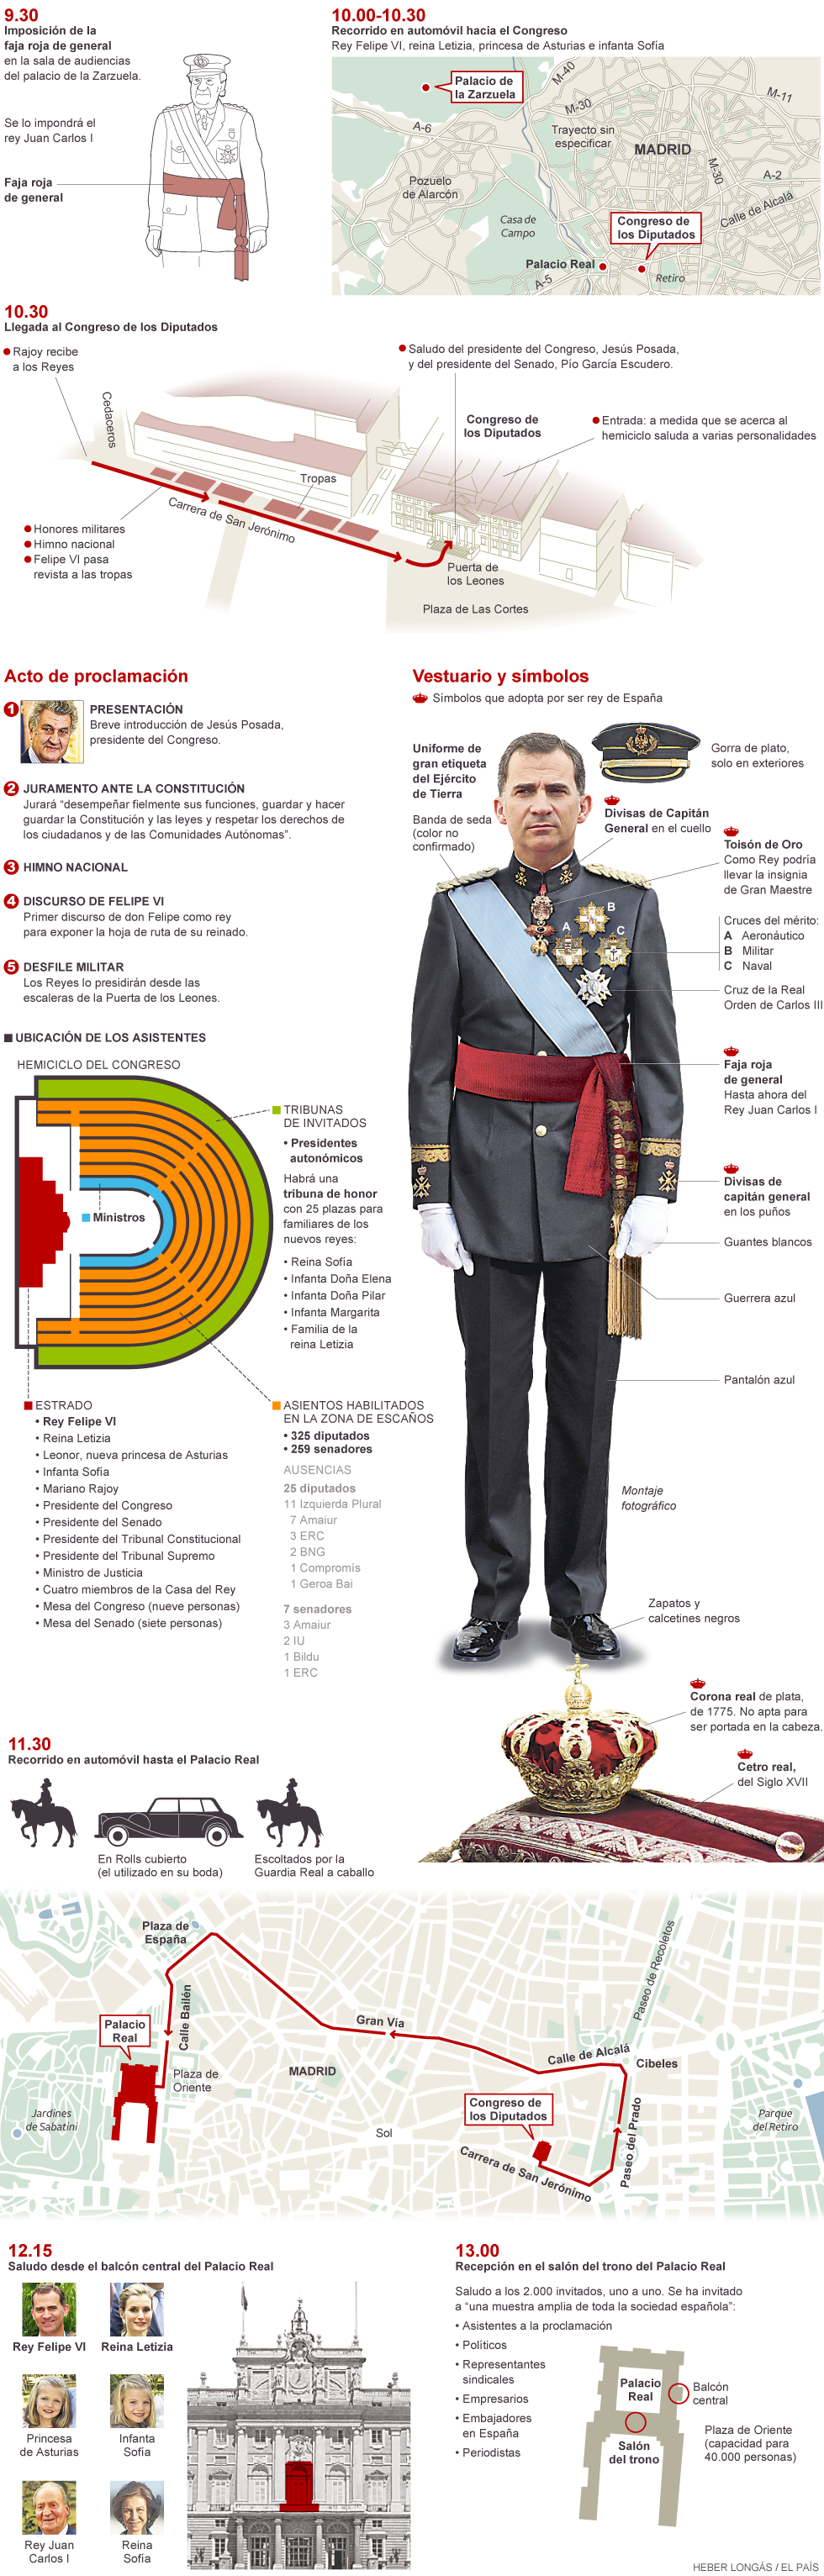 1403031532_023044_1403113456_noticia_normal - Arranca la era Felipe VI, el nuevo rey de España